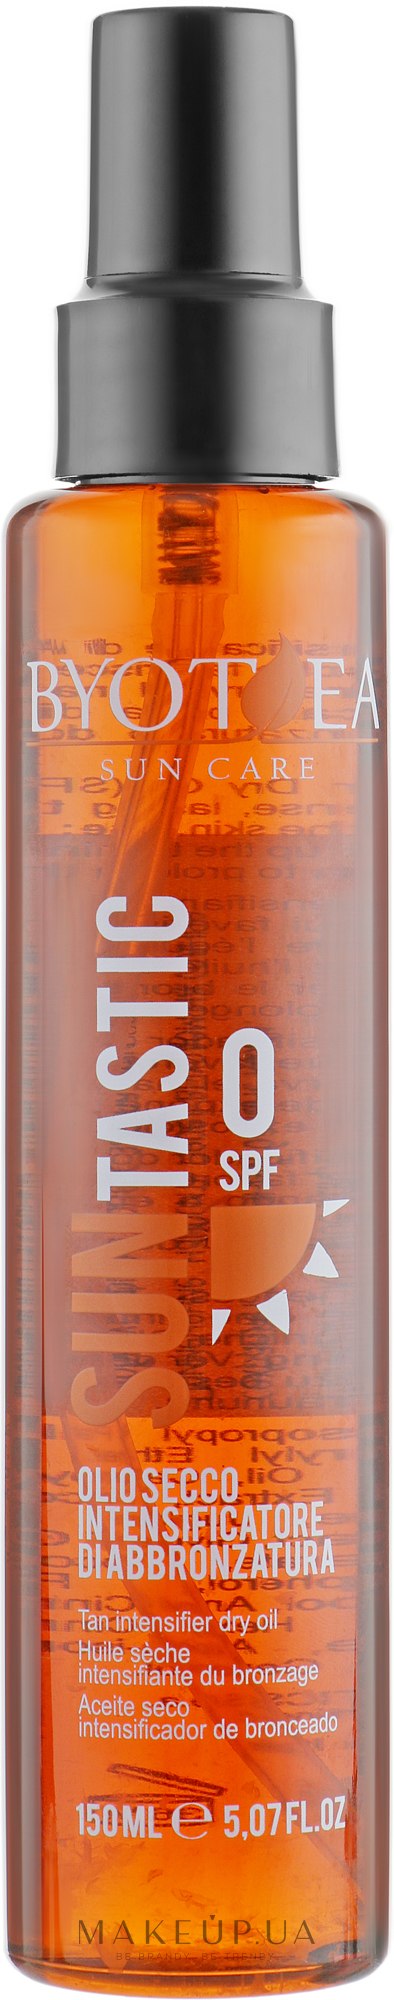 Олія для засмаги - Byothea TAN Intensifier SPF 0 — фото 150ml